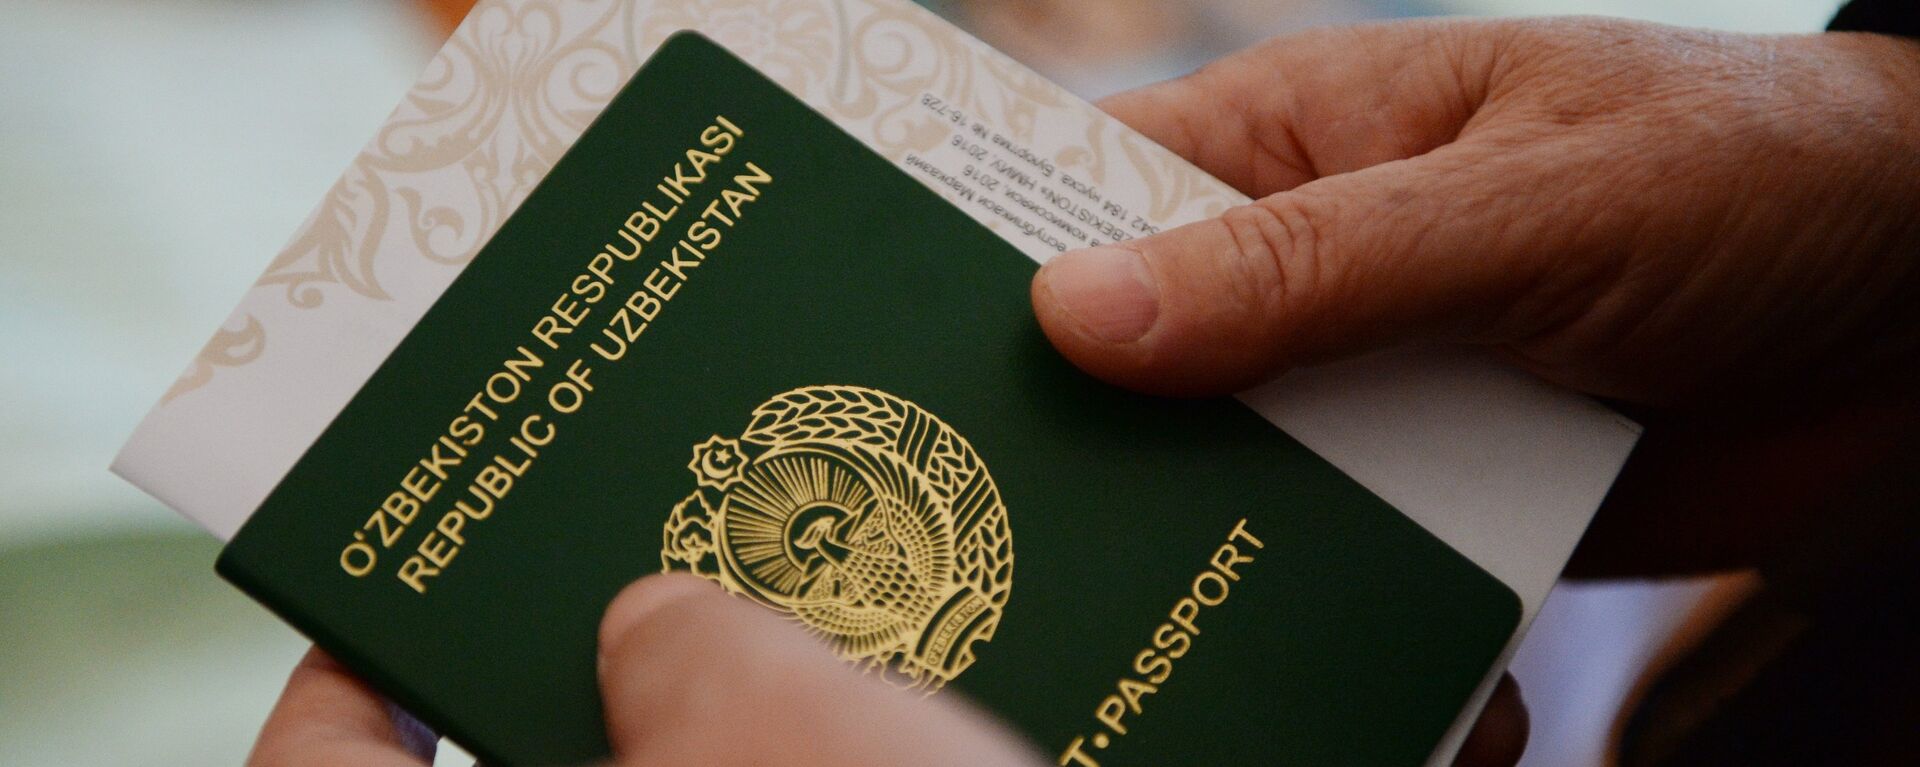 Паспорт и бланк в руках избирателя - Sputnik Узбекистан, 1920, 12.01.2021